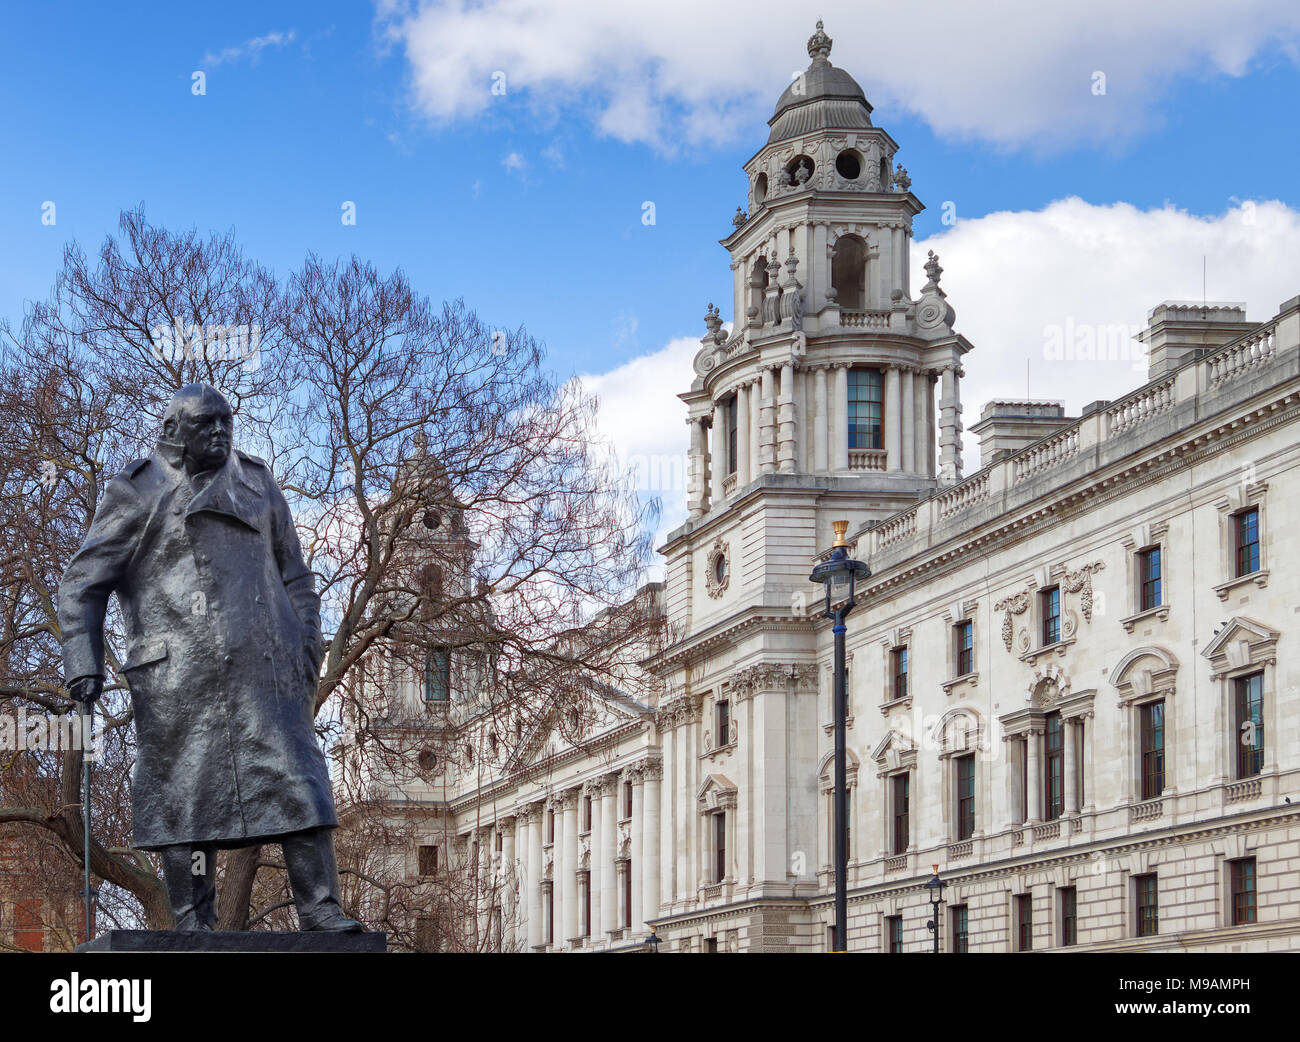 Londra/UK - marzo 21 : Statua di Winston Churchill a Londra il 21 marzo 2018 Foto Stock